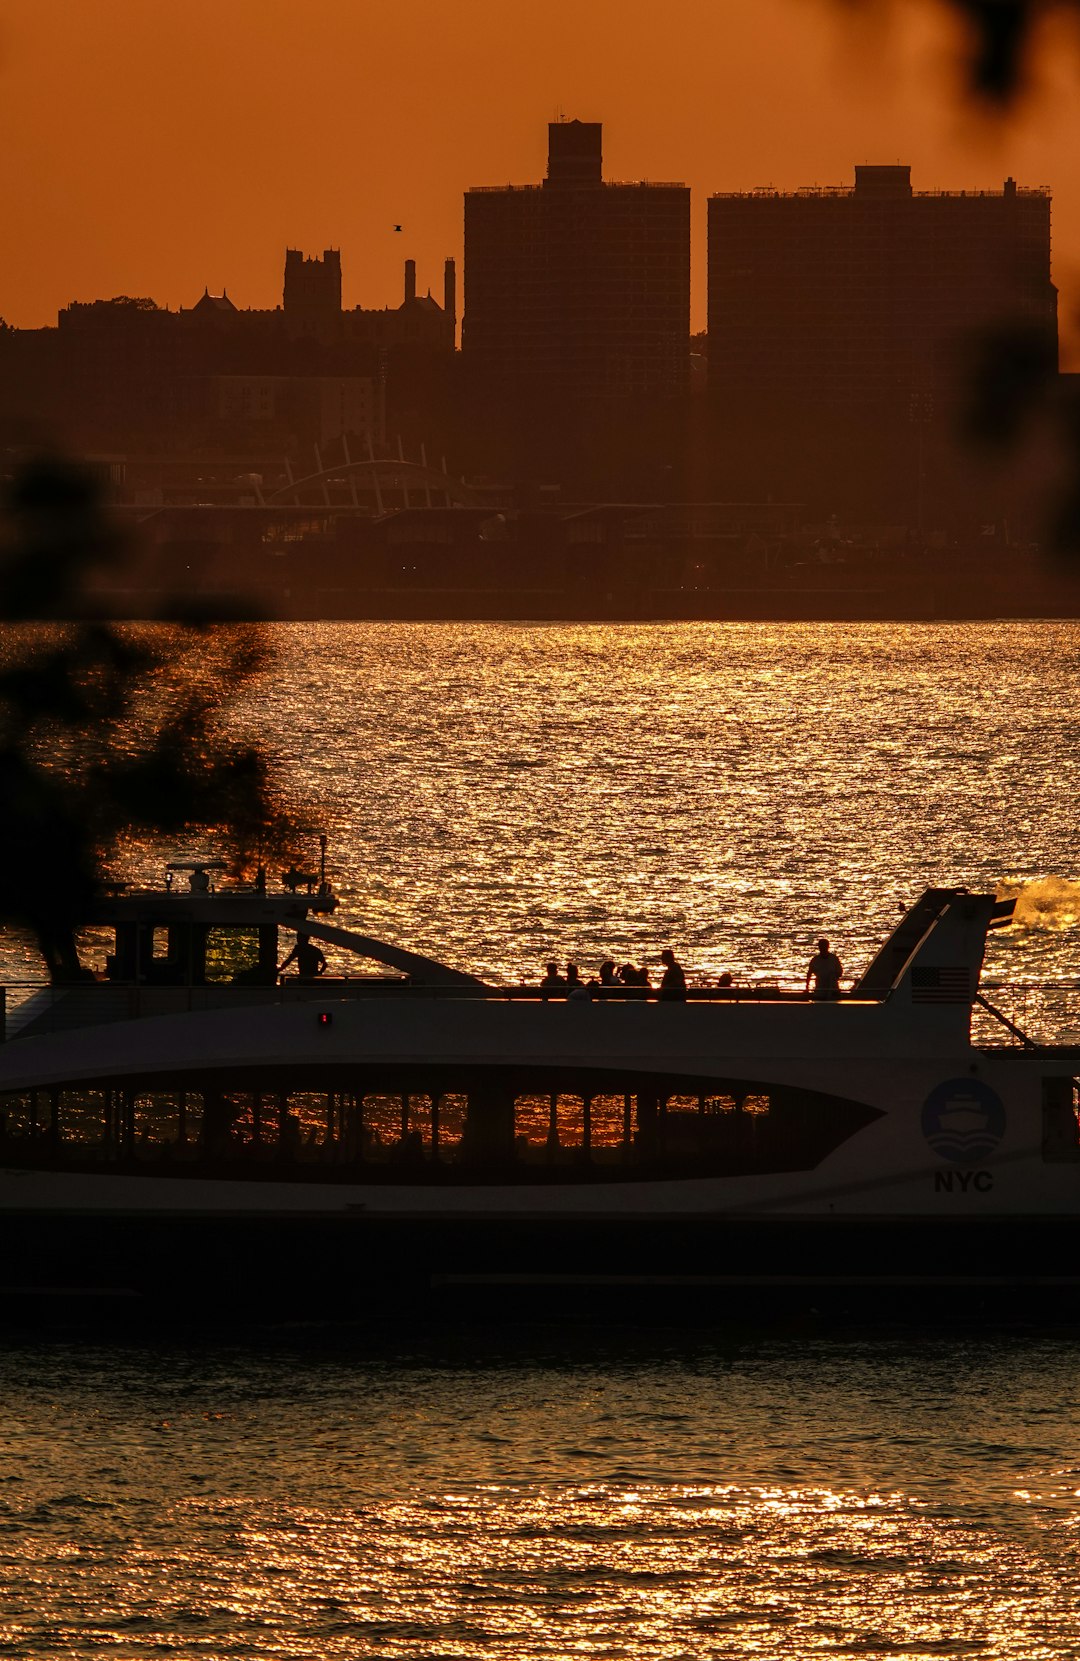 white and black passenger plane on dock during sunset